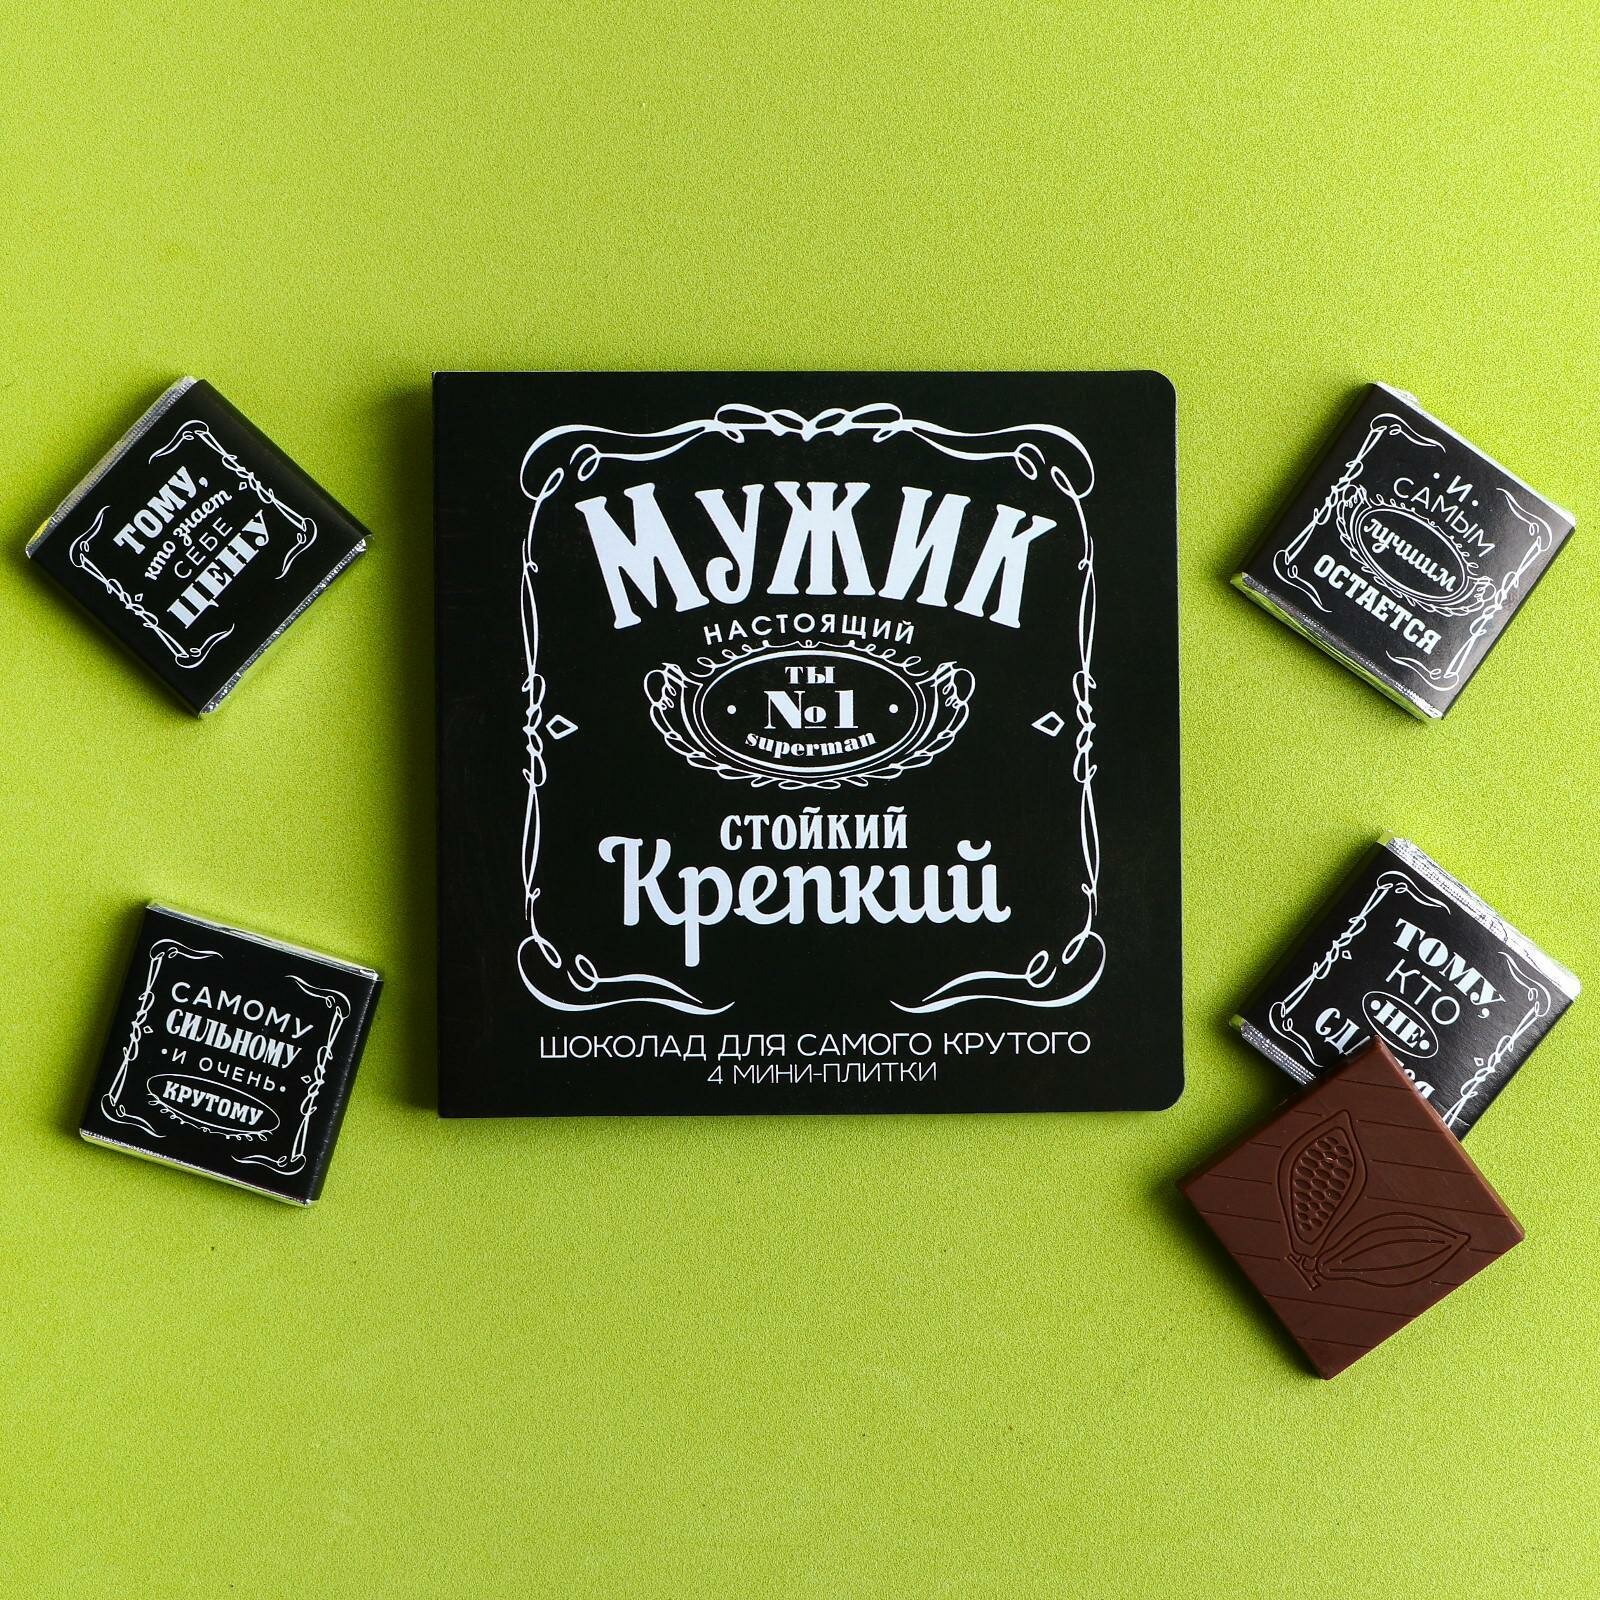 Шоколад молочный «Мужик», открытка, 5 г х 4 шт. (18+)